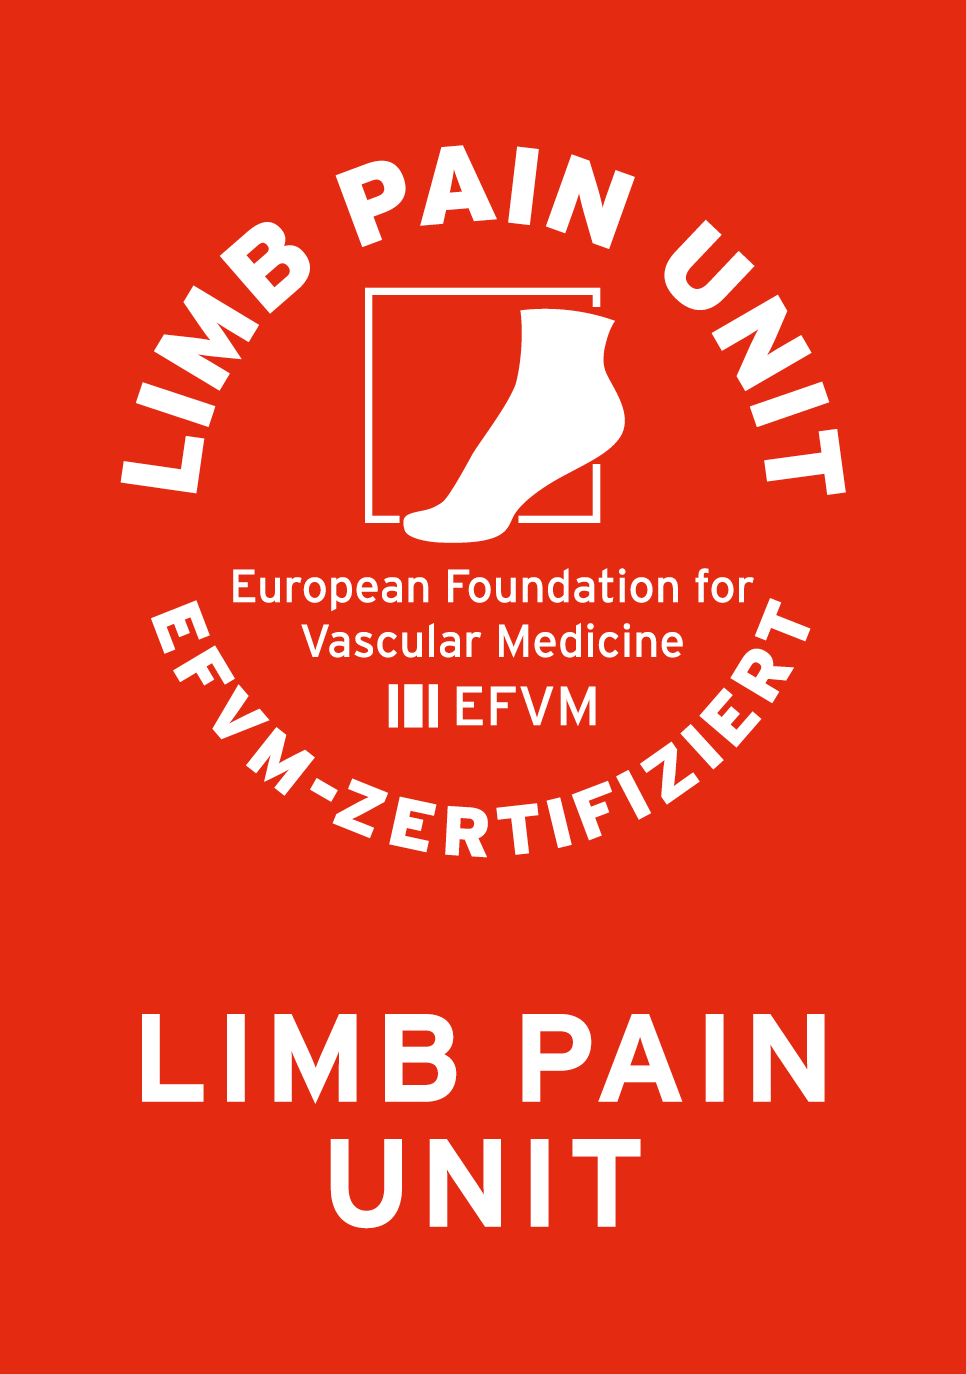 LIMB PAIN UNIT EFVM Programm zur Etablierung von Beinschmerzambulanzen in enger Kooperation mit Kardiologen, Gefäßchirurgen, Angiologen